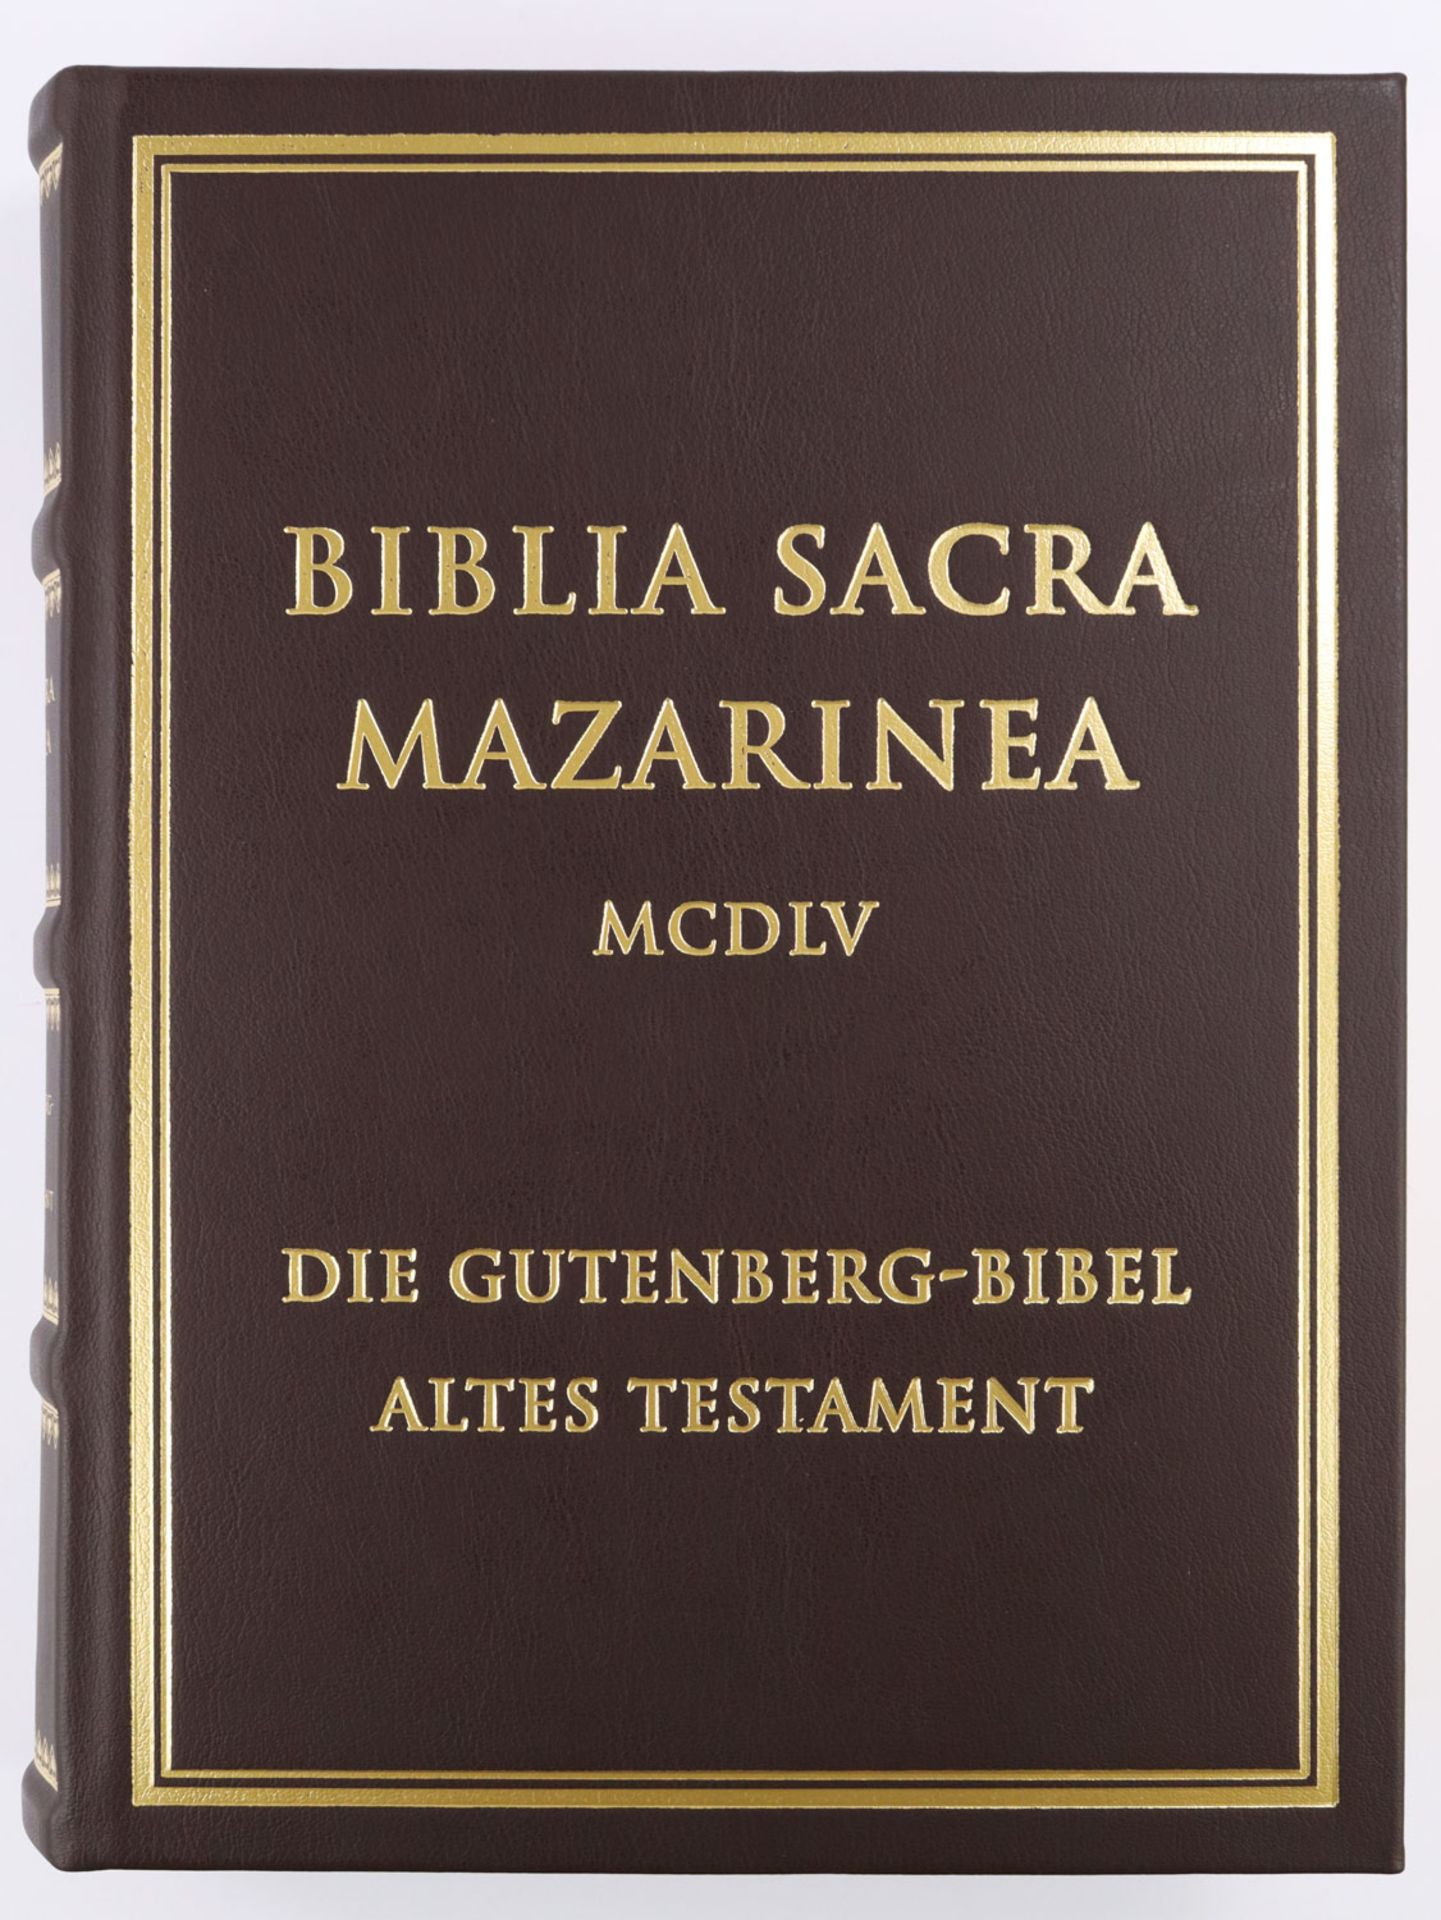 Gutenberg Bibel Faksimele - Image 12 of 20